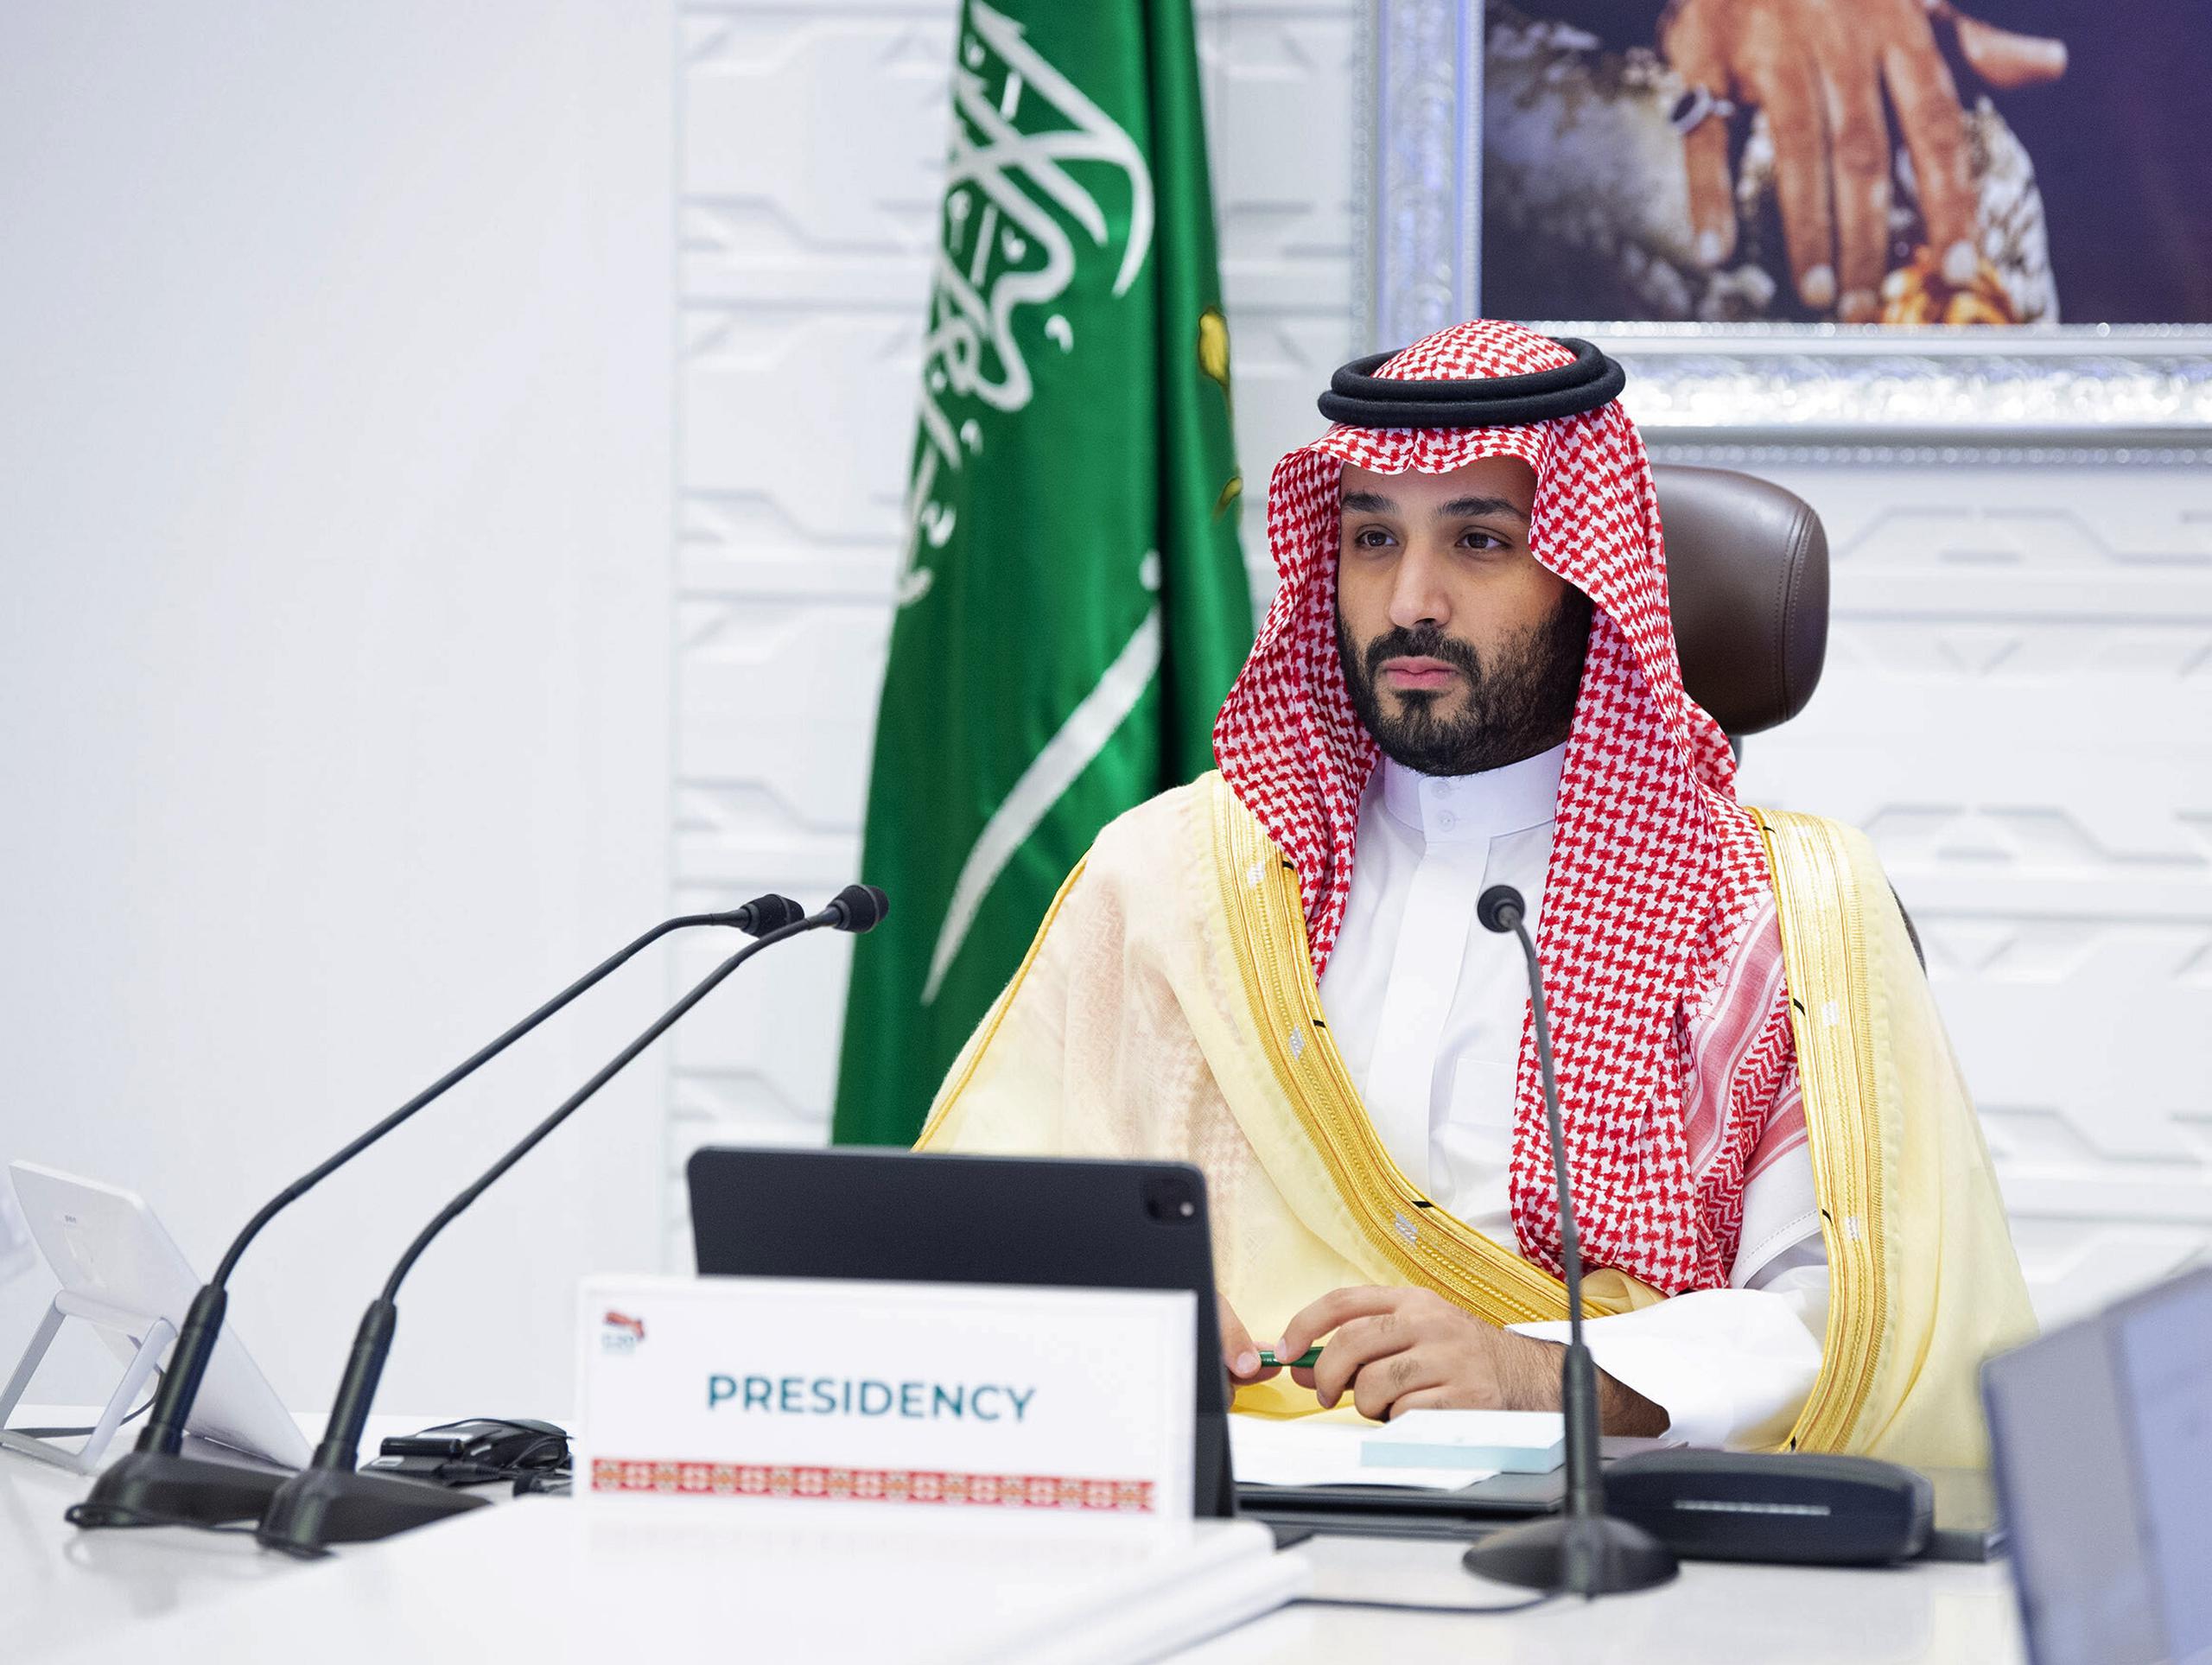 El príncipe heredero de Arabia Saudí, Mohamed bin Salman, participa en una cumbre virtual del G20, en Riad, Arabia Saudí.